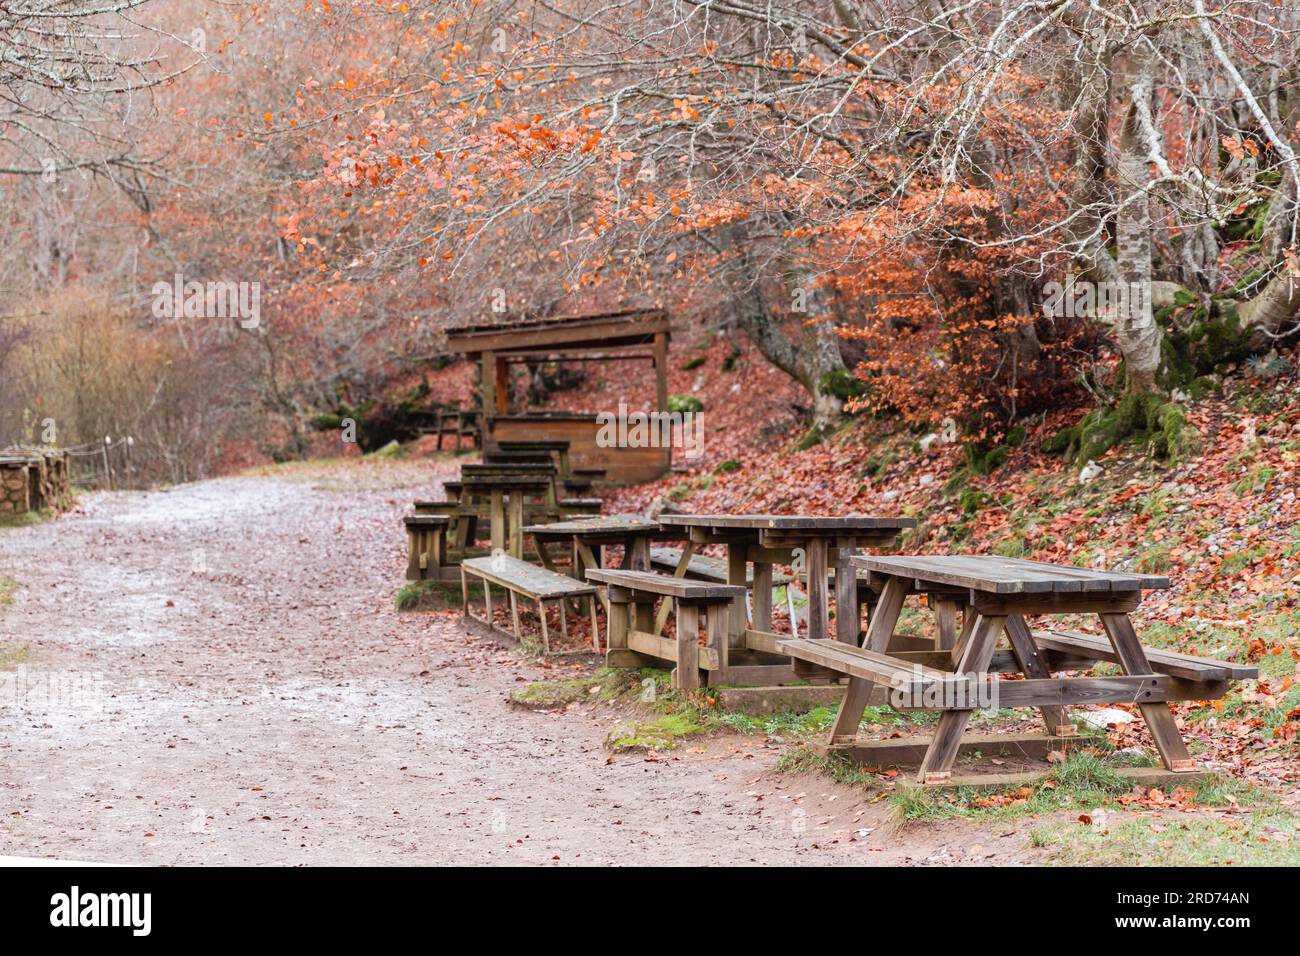 Folgen Sie dem Pfad mit Merendero-Tischen, einem rustikalen Rückzugsort inmitten der bezaubernden braunen Herbstlandschaft Stockfoto